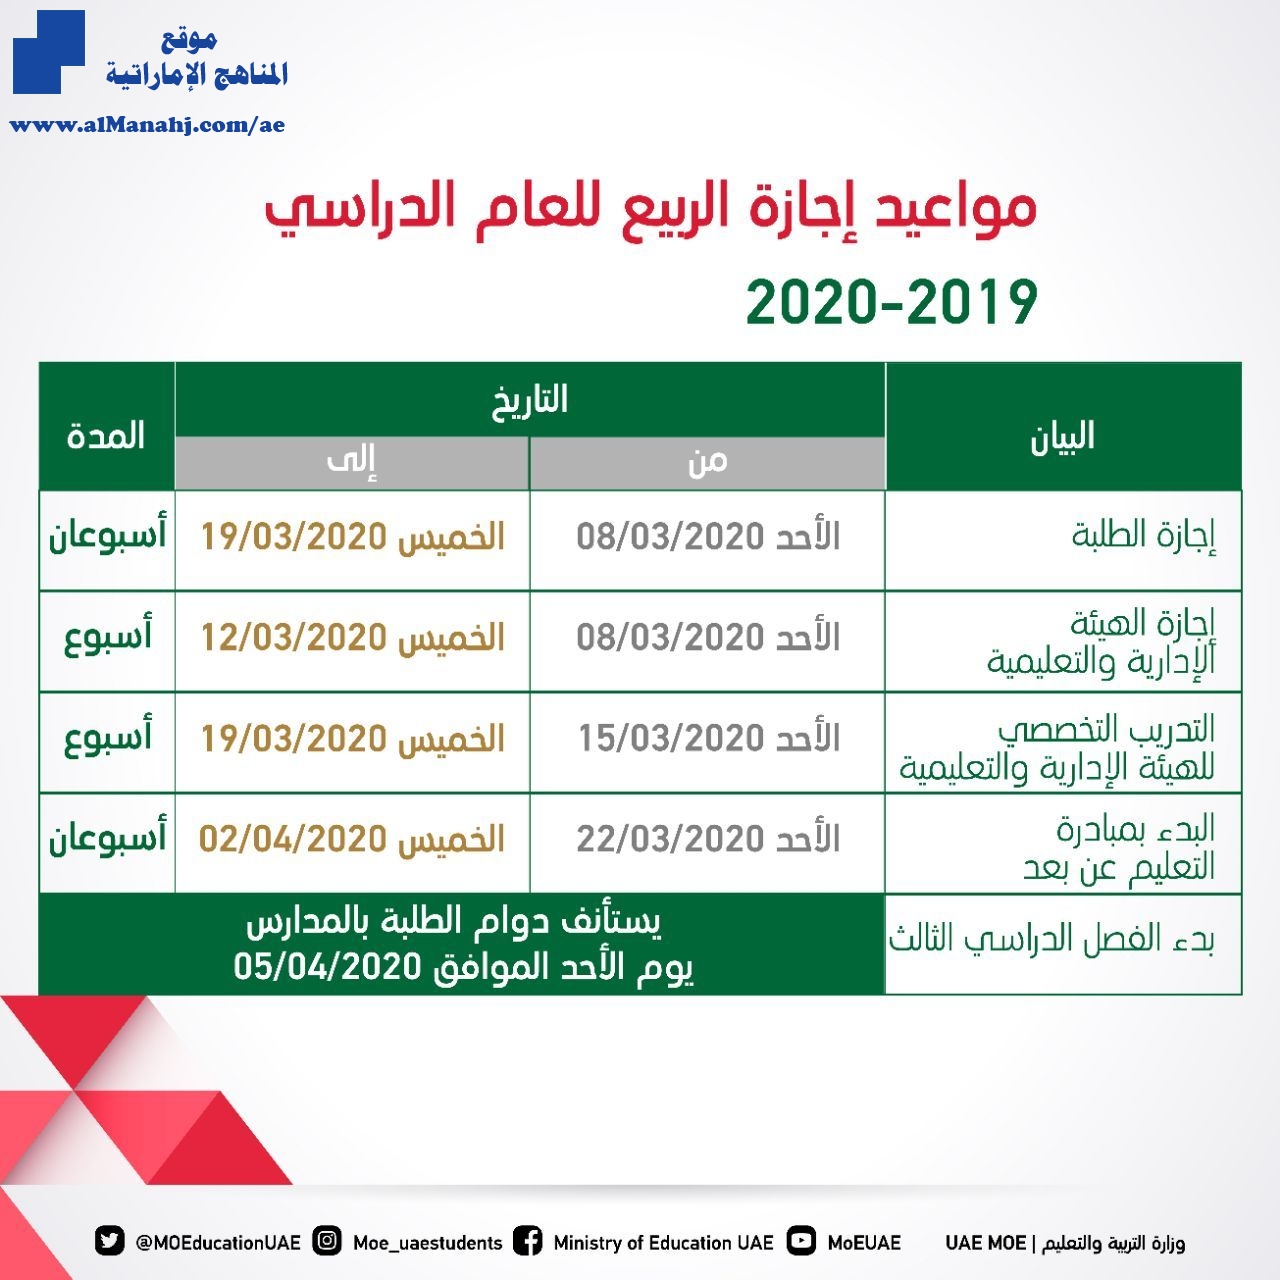 التريية تعلن المواعيد الدقيقة لإجازة الربيع 2019 2020 أخبار التربية الفصل الثاني 2019 2020 المناهج الإماراتية